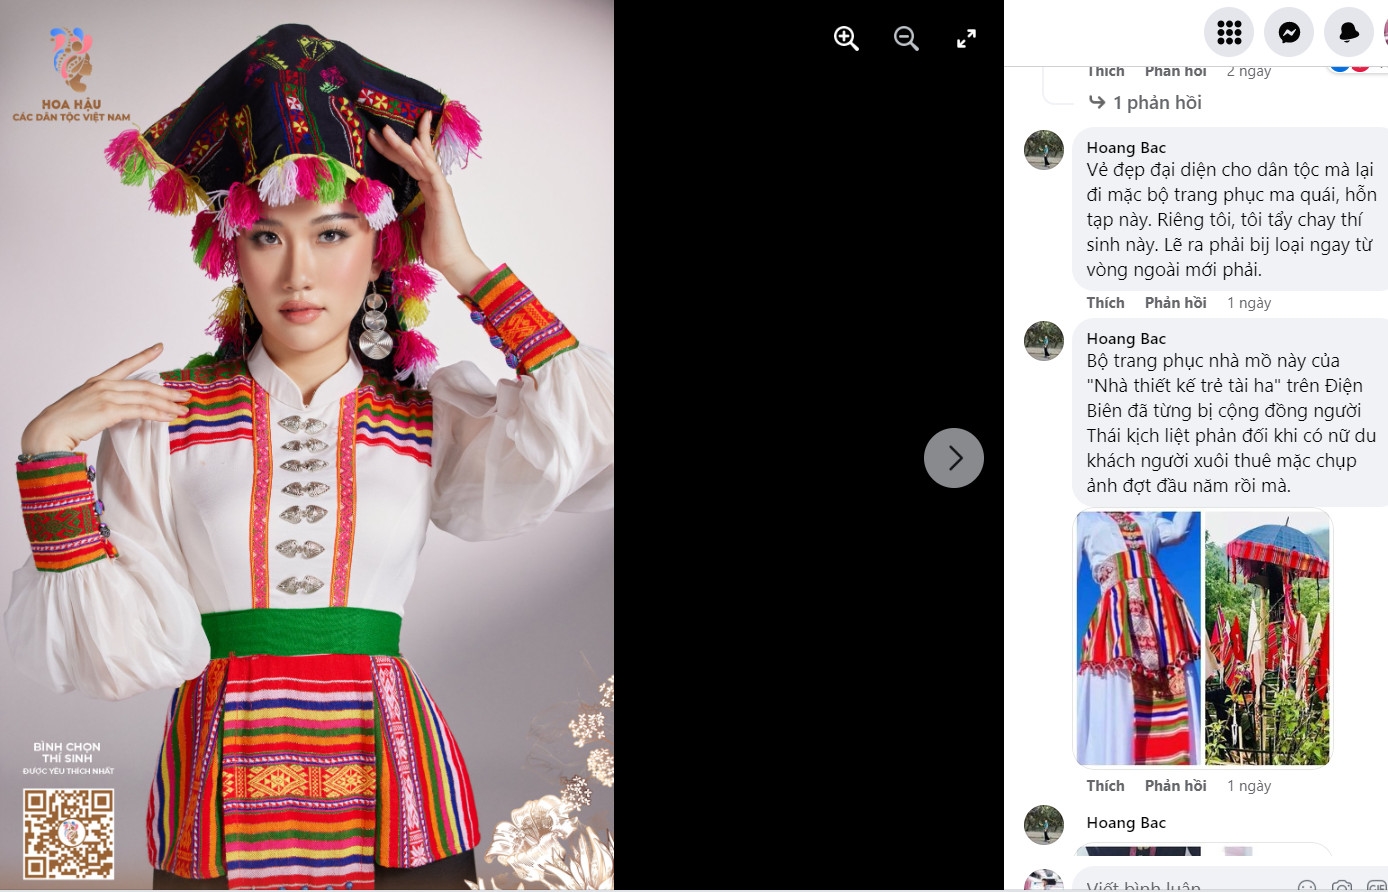 Chiếc váy Thái của thí sinh tham dự cuộc thi Hoa hậu các dân tộc Việt Nam năm 2022 sử dụng chất liệu vải khít thường sử dụng trong trang trí nhà mồ của người Thái